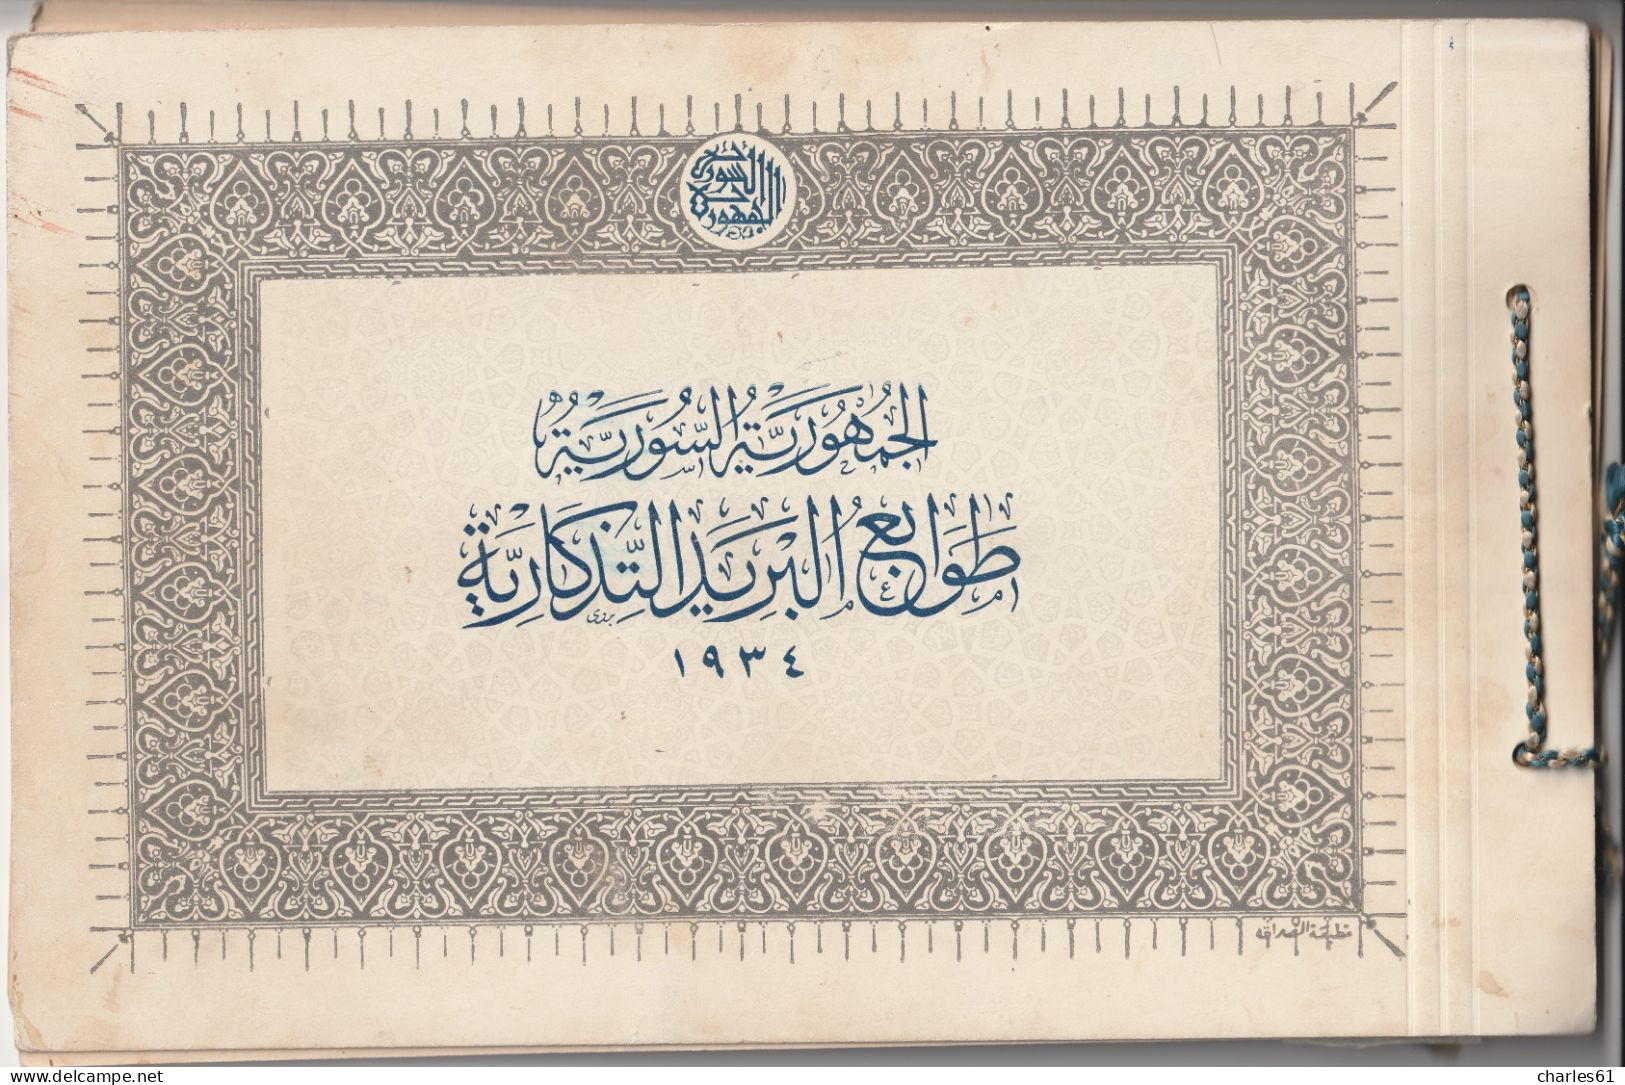 SYRIE - LIVRET SOUVENIR - N°221/39+PA N°60/9 * (1934) Proclamation de la Répuplique